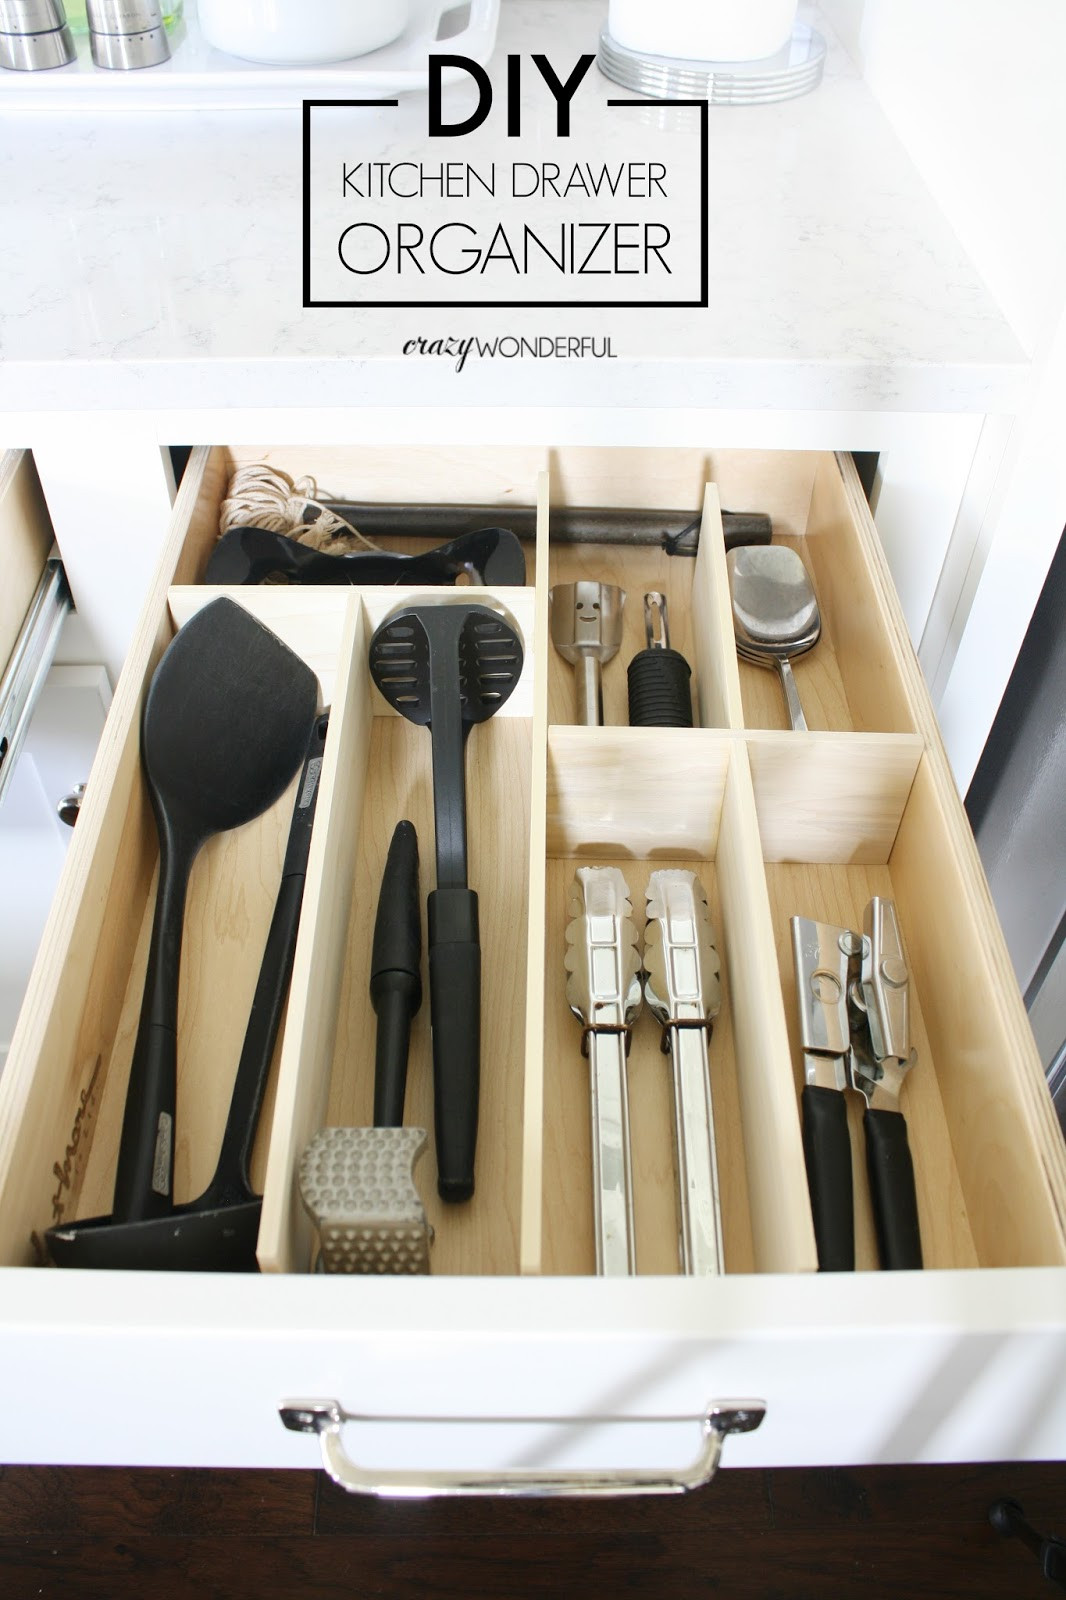 DIY Kitchen Drawer Organizer
 DIY custom kitchen drawer organizers Crazy Wonderful